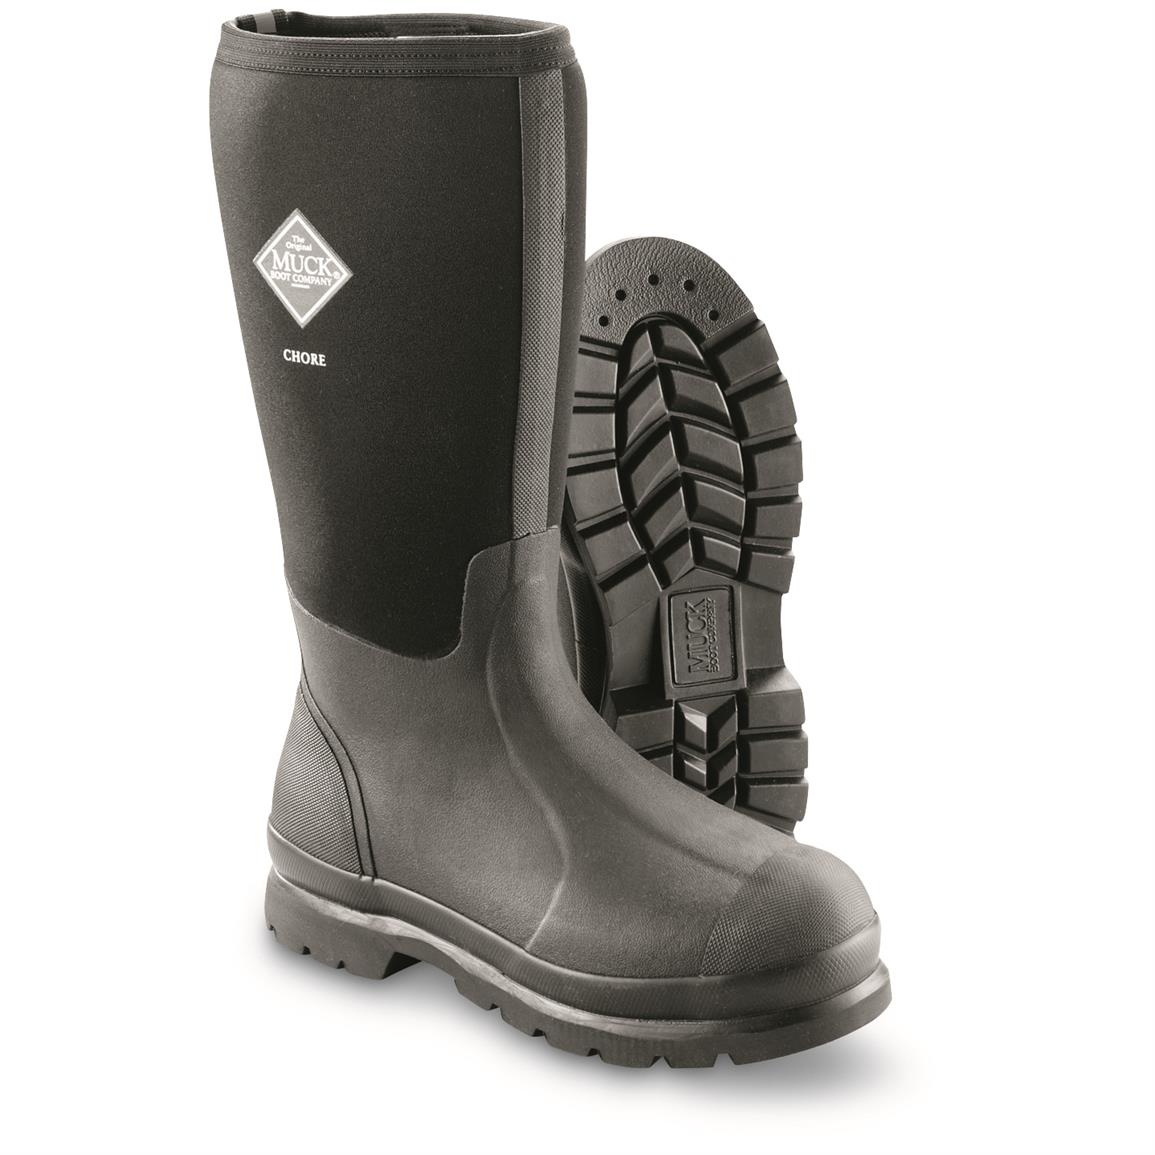 muck boots men's chore waterproof steel toe work boots